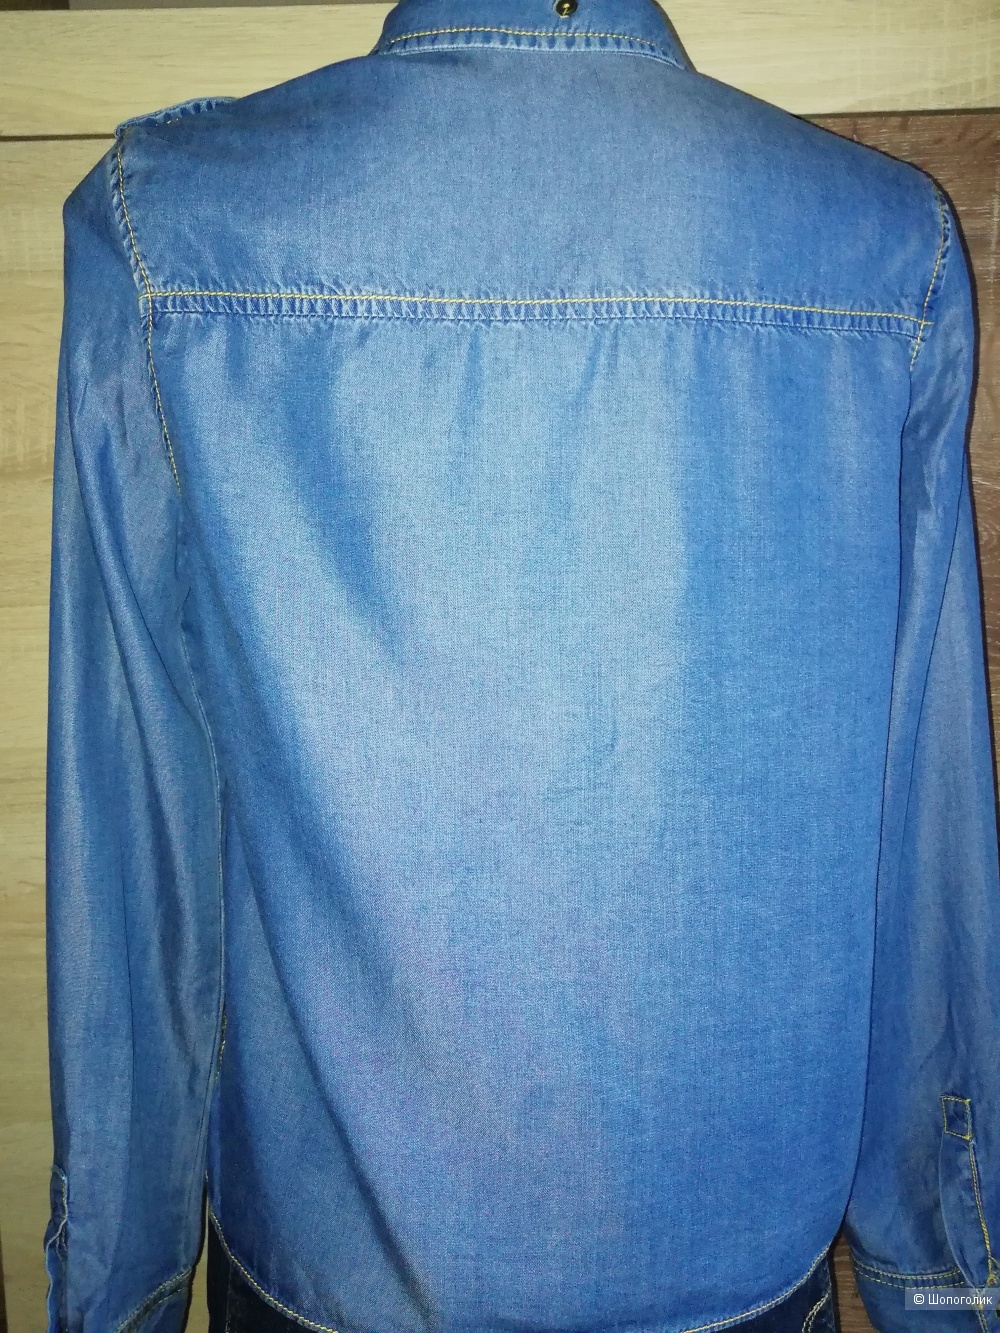 Джинсовая женская рубашка ZARA Basic Z1975 DENIM, размер 44-46